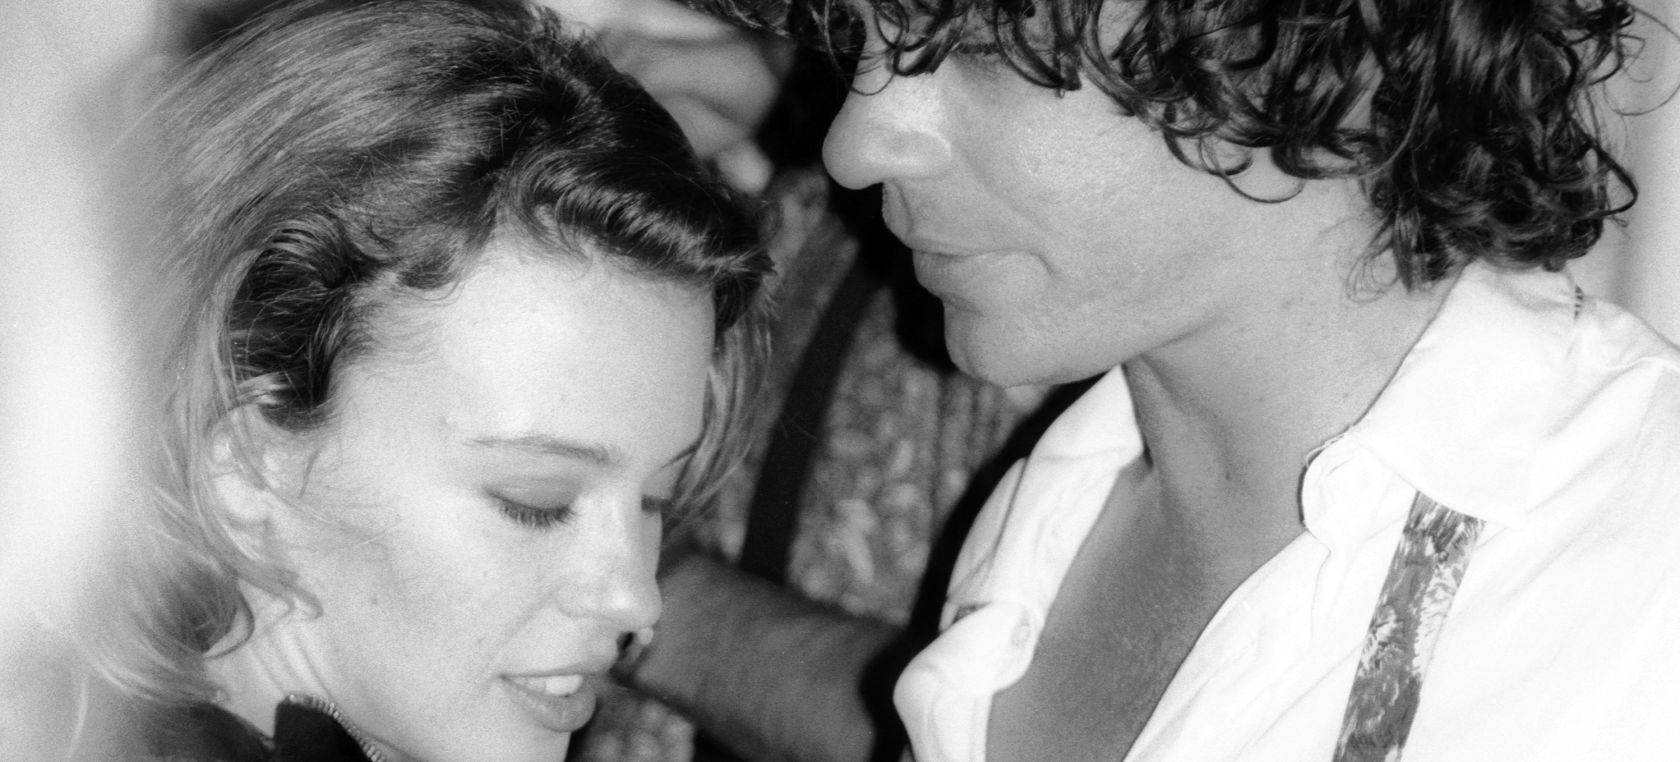 Kylie Minogue y Michael Hutchence: una relación de “amor, sexo y drogas” condenada al fracaso